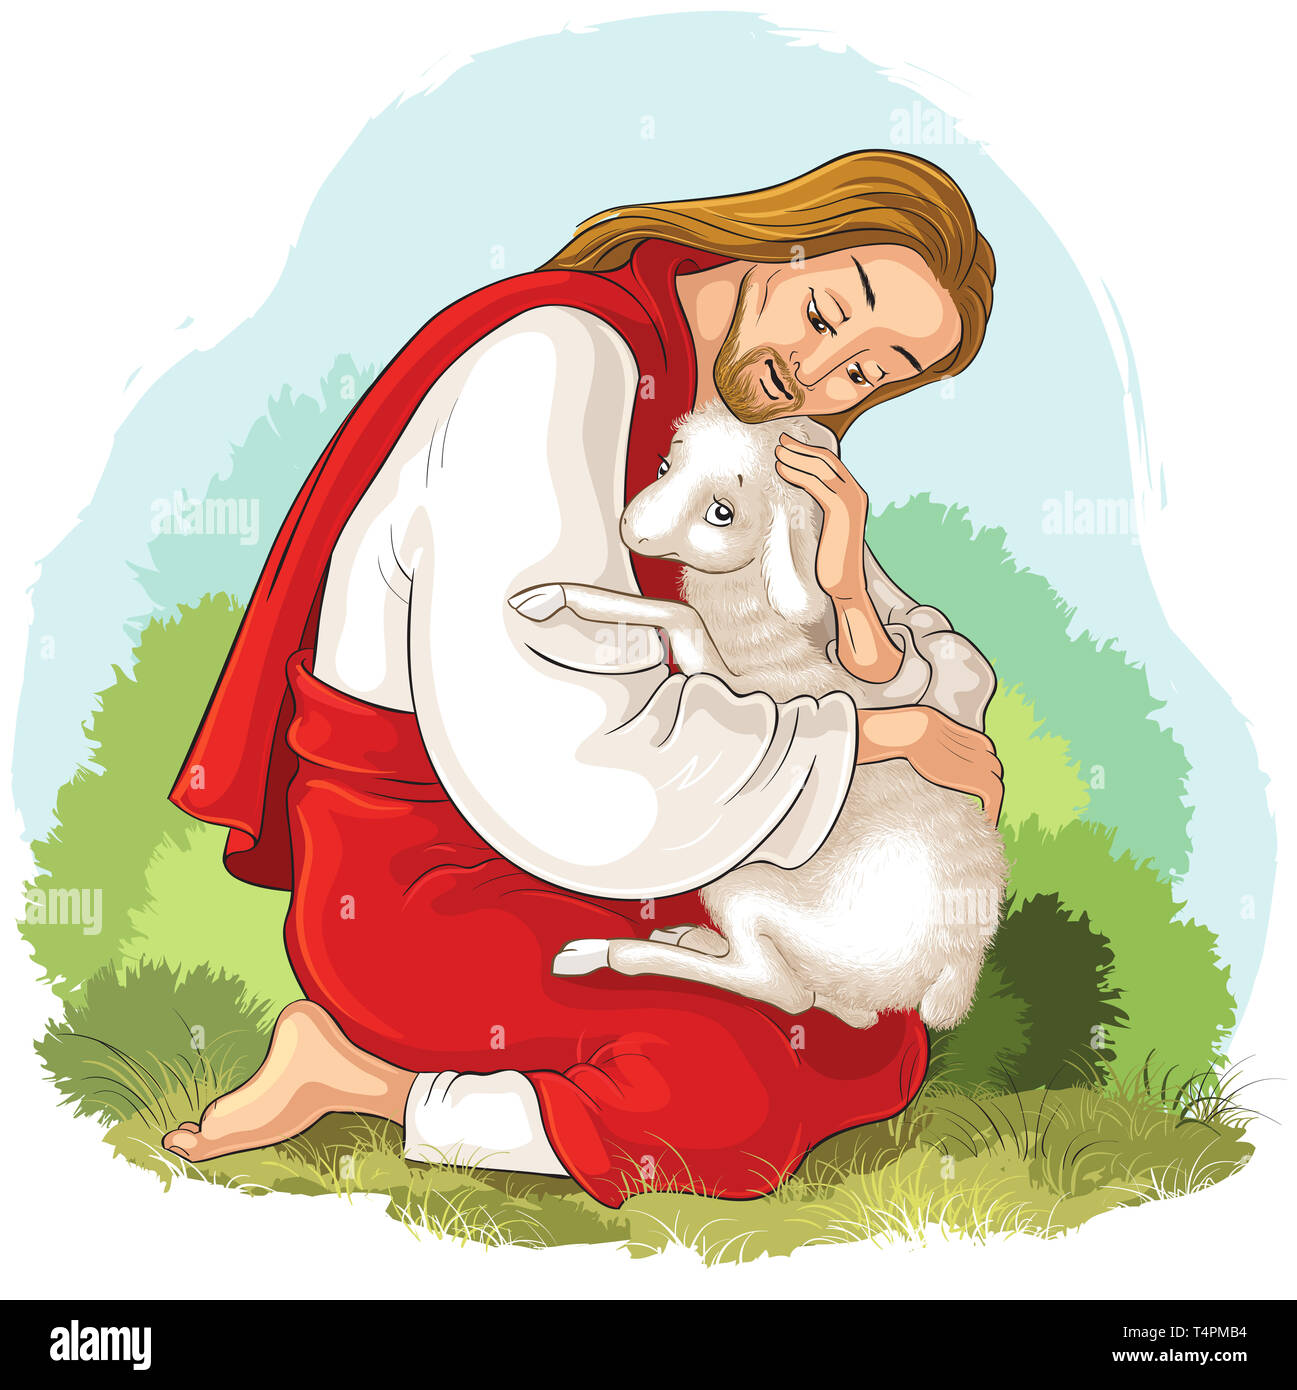 Histoire de Jésus Christ. La parabole de la brebis perdue. Le Bon Pasteur le sauvetage d'un agneau pris dans les épines Banque D'Images